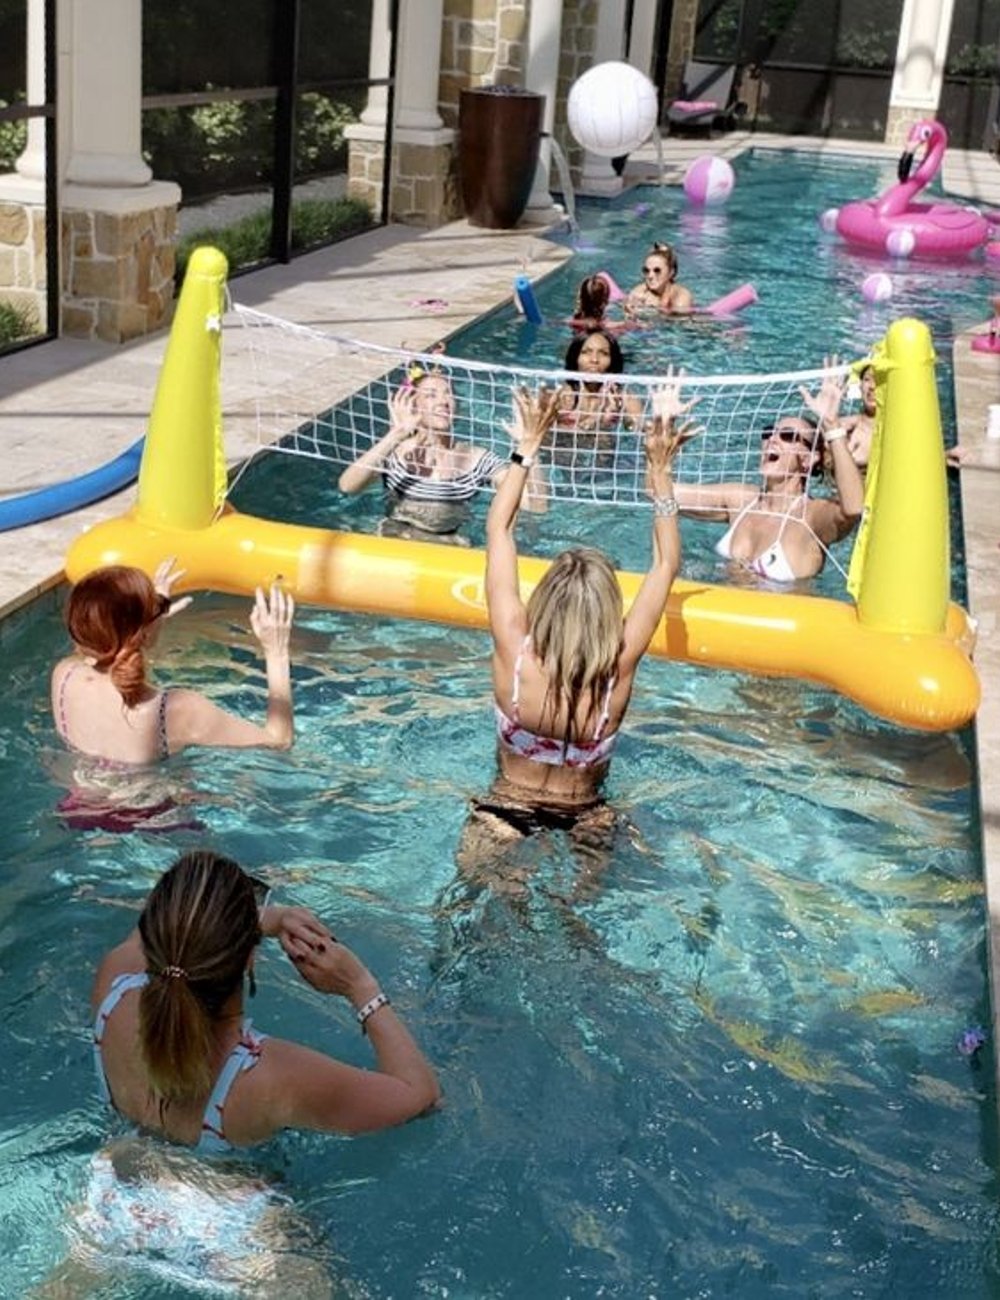 Pool party - festa - decor - verão - piscina - https://stealthelook.com.br